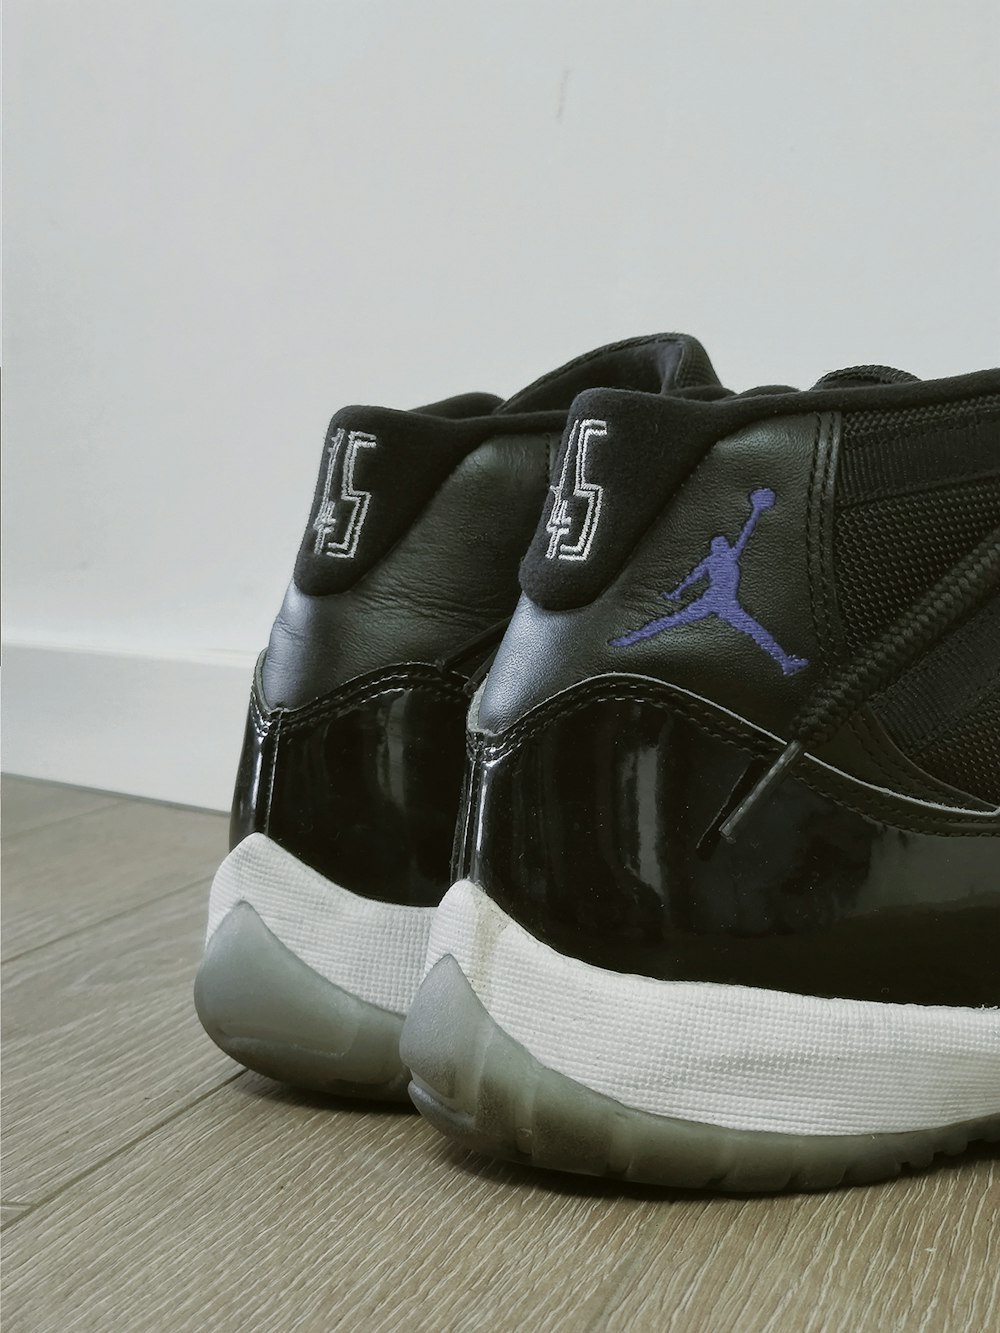 pair of black Air Jordan basketball shoes